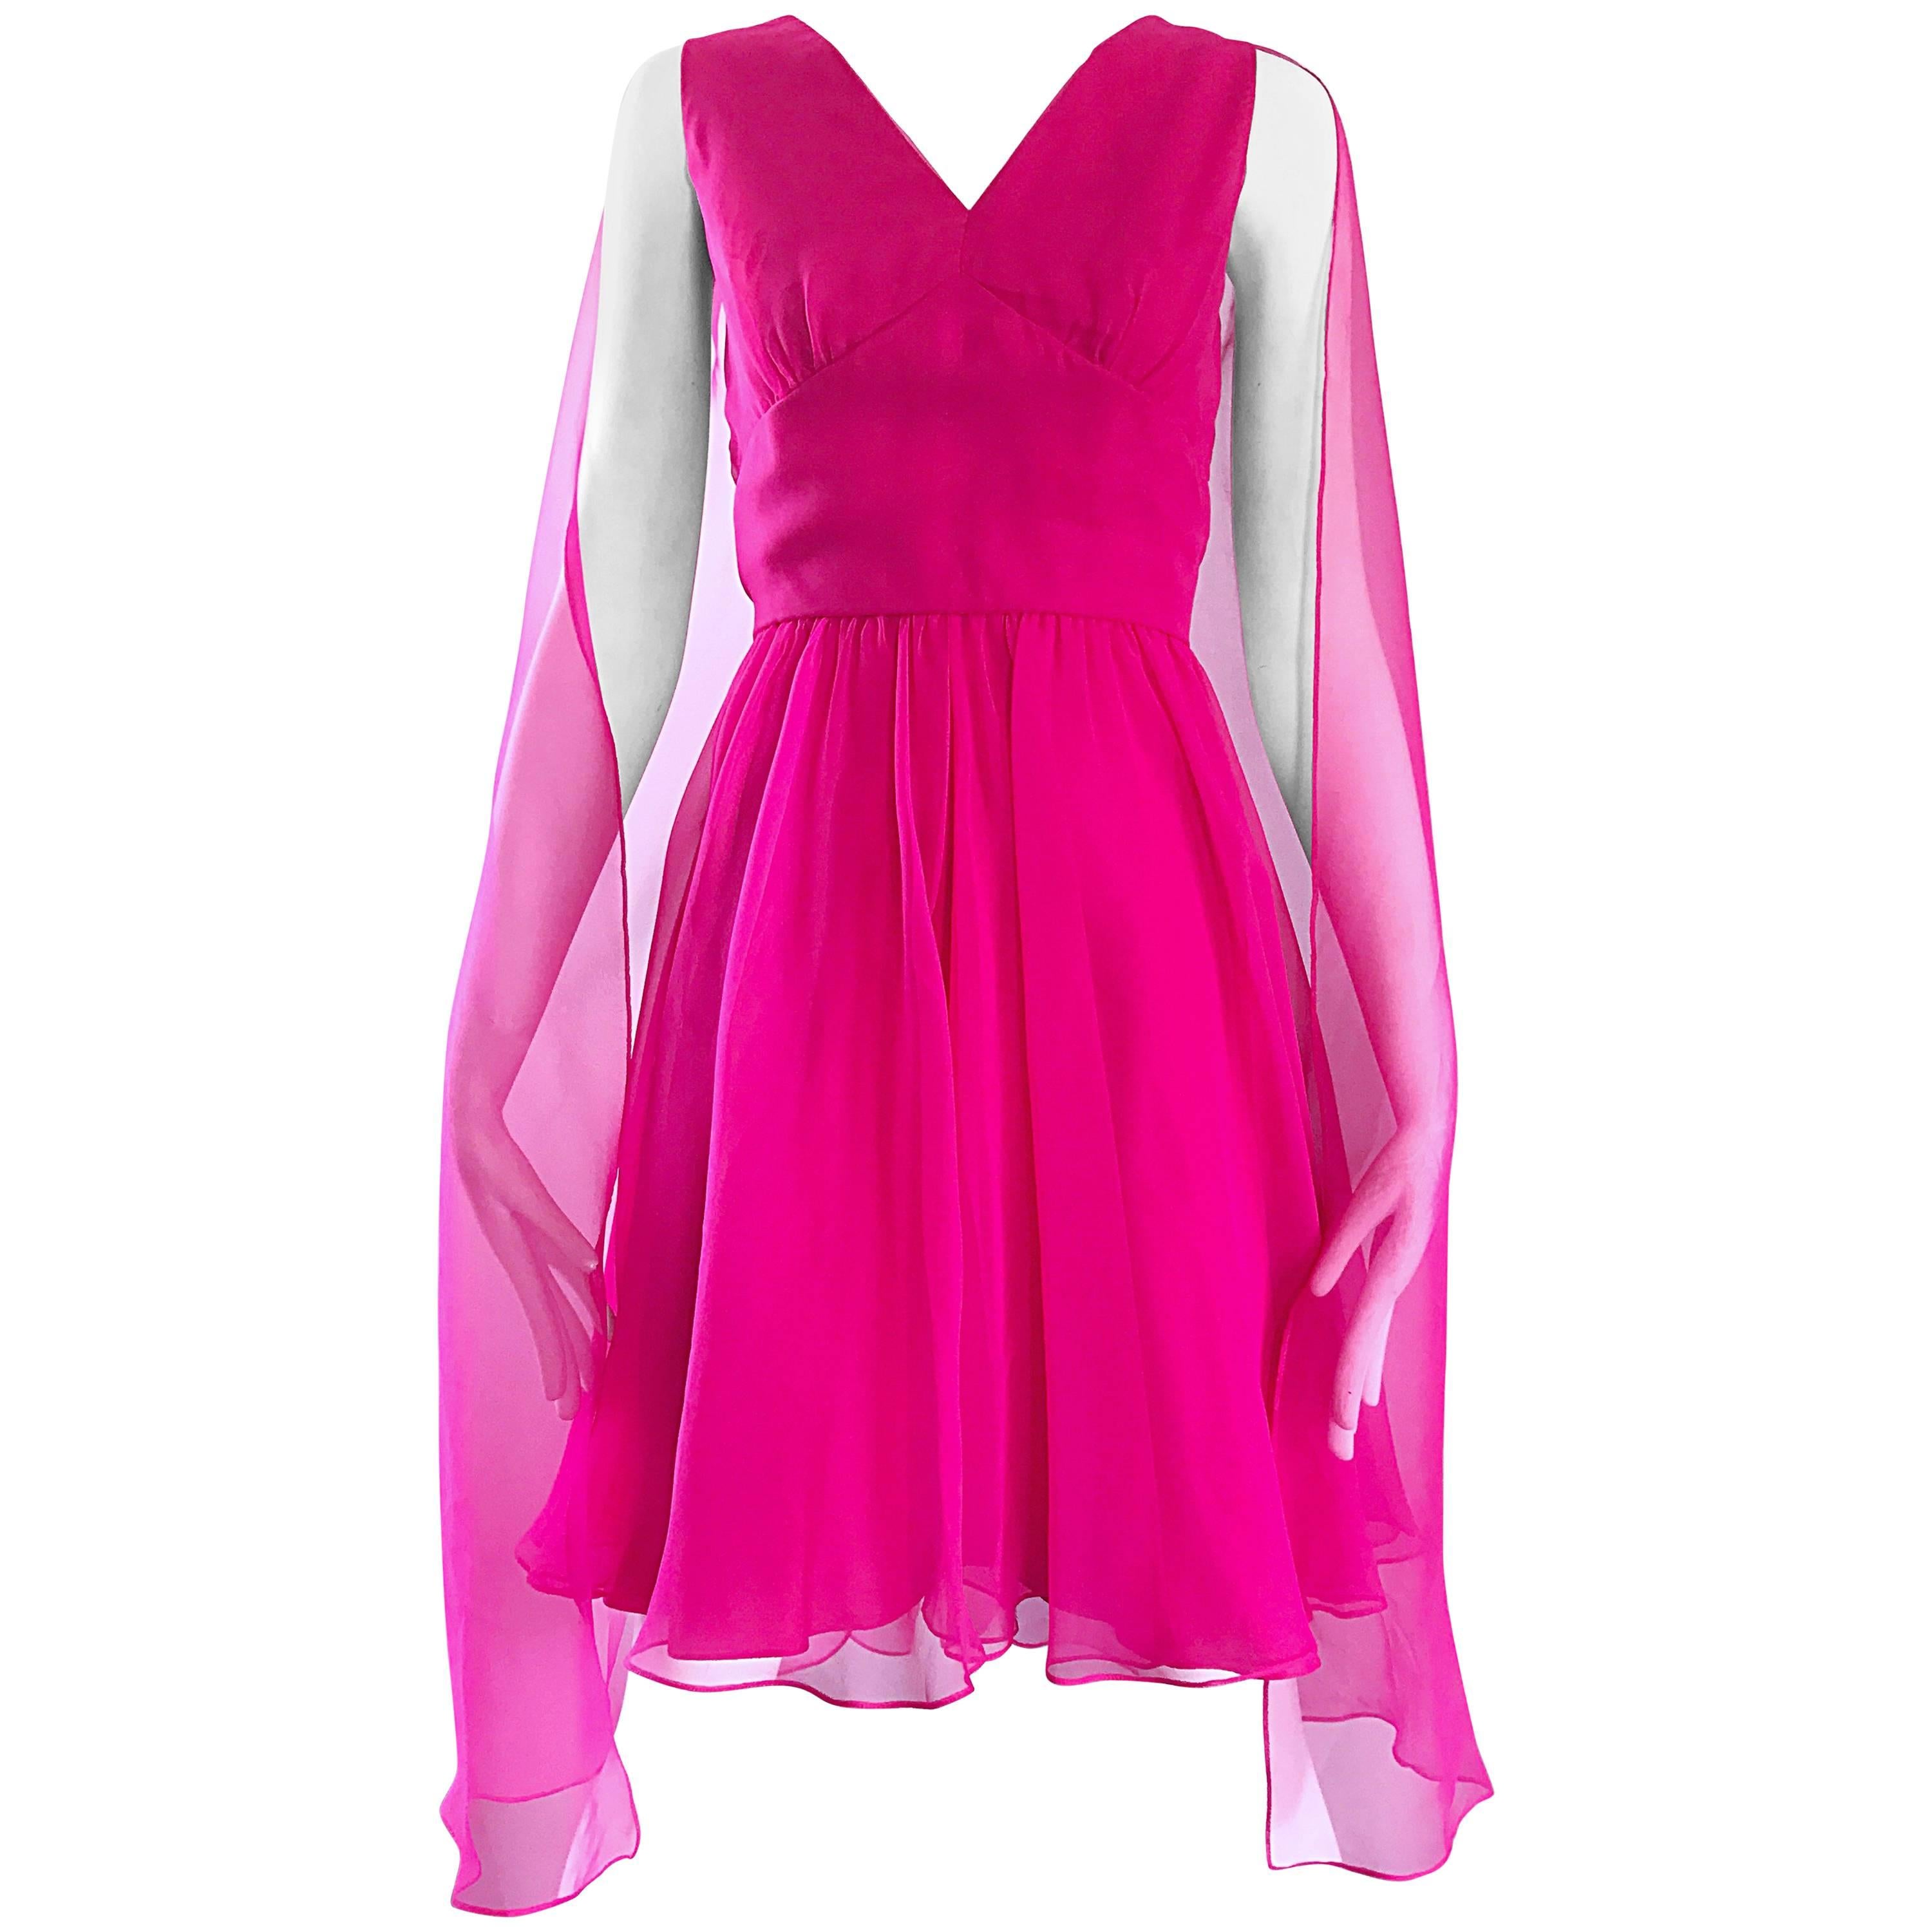 pink 60s dress, hot pink chiffon dress